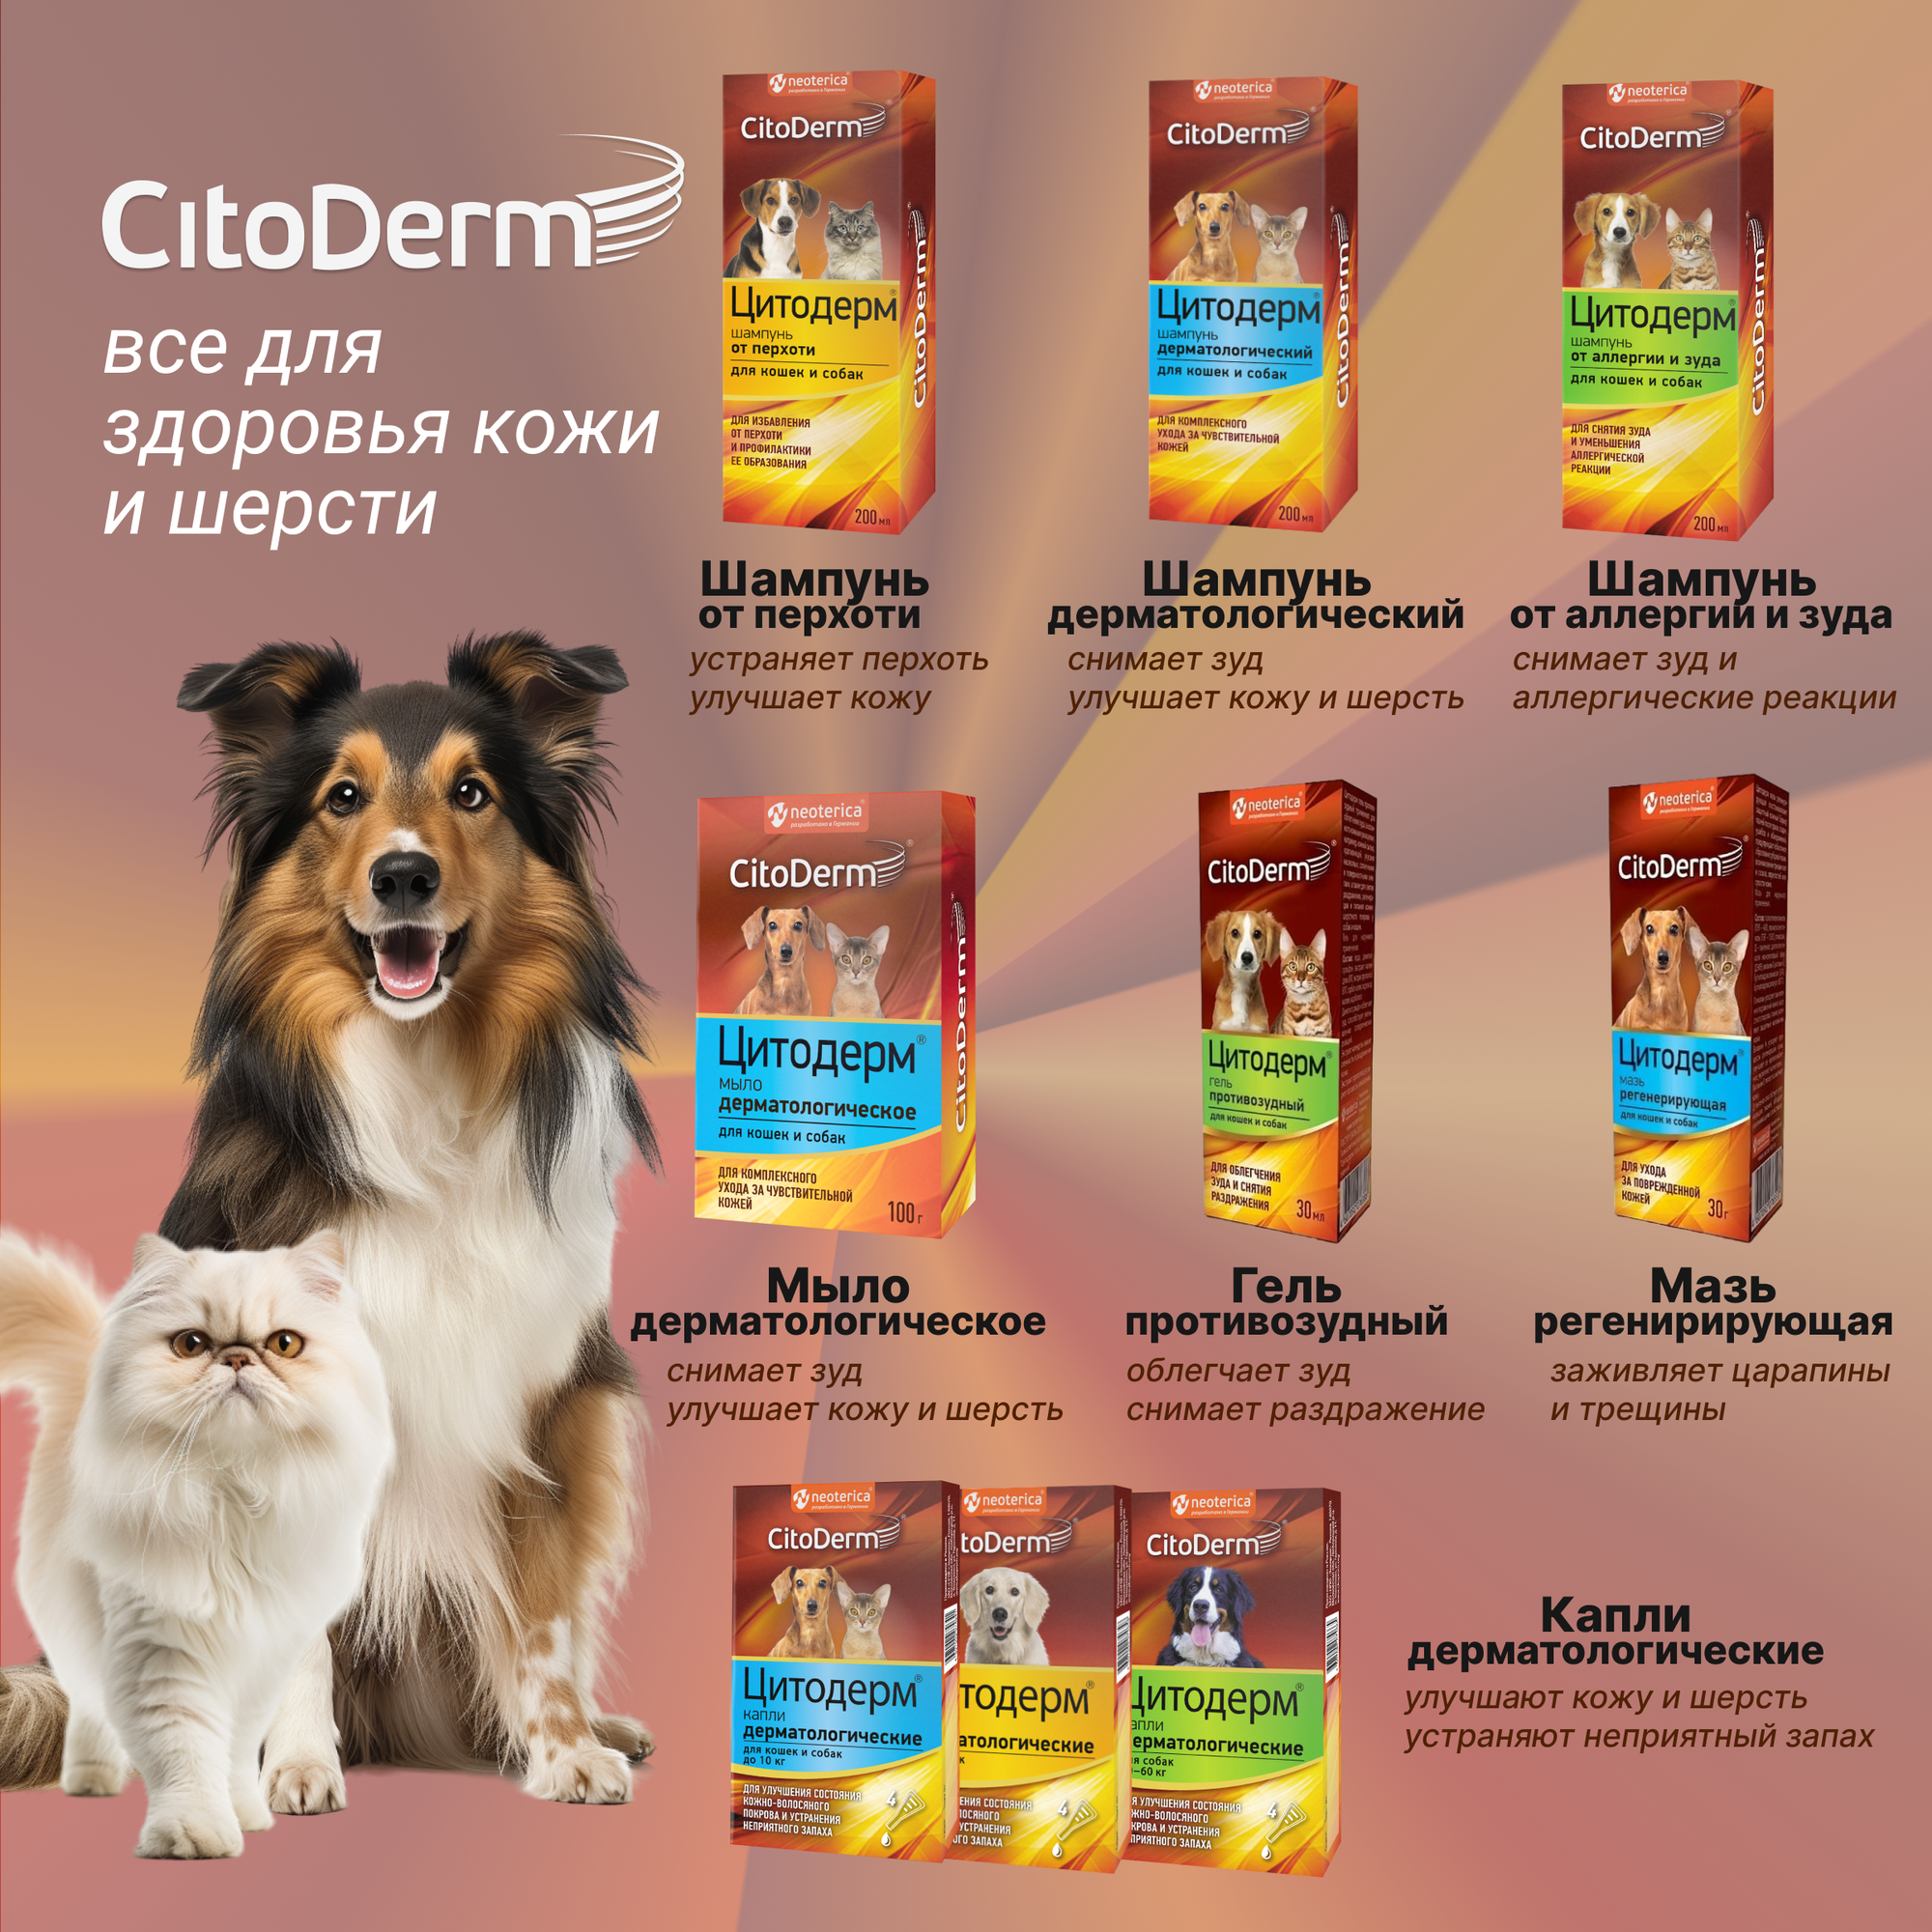 Шампунь CitoDerm от аллергии и зуда, для собак и кошек, 200 мл